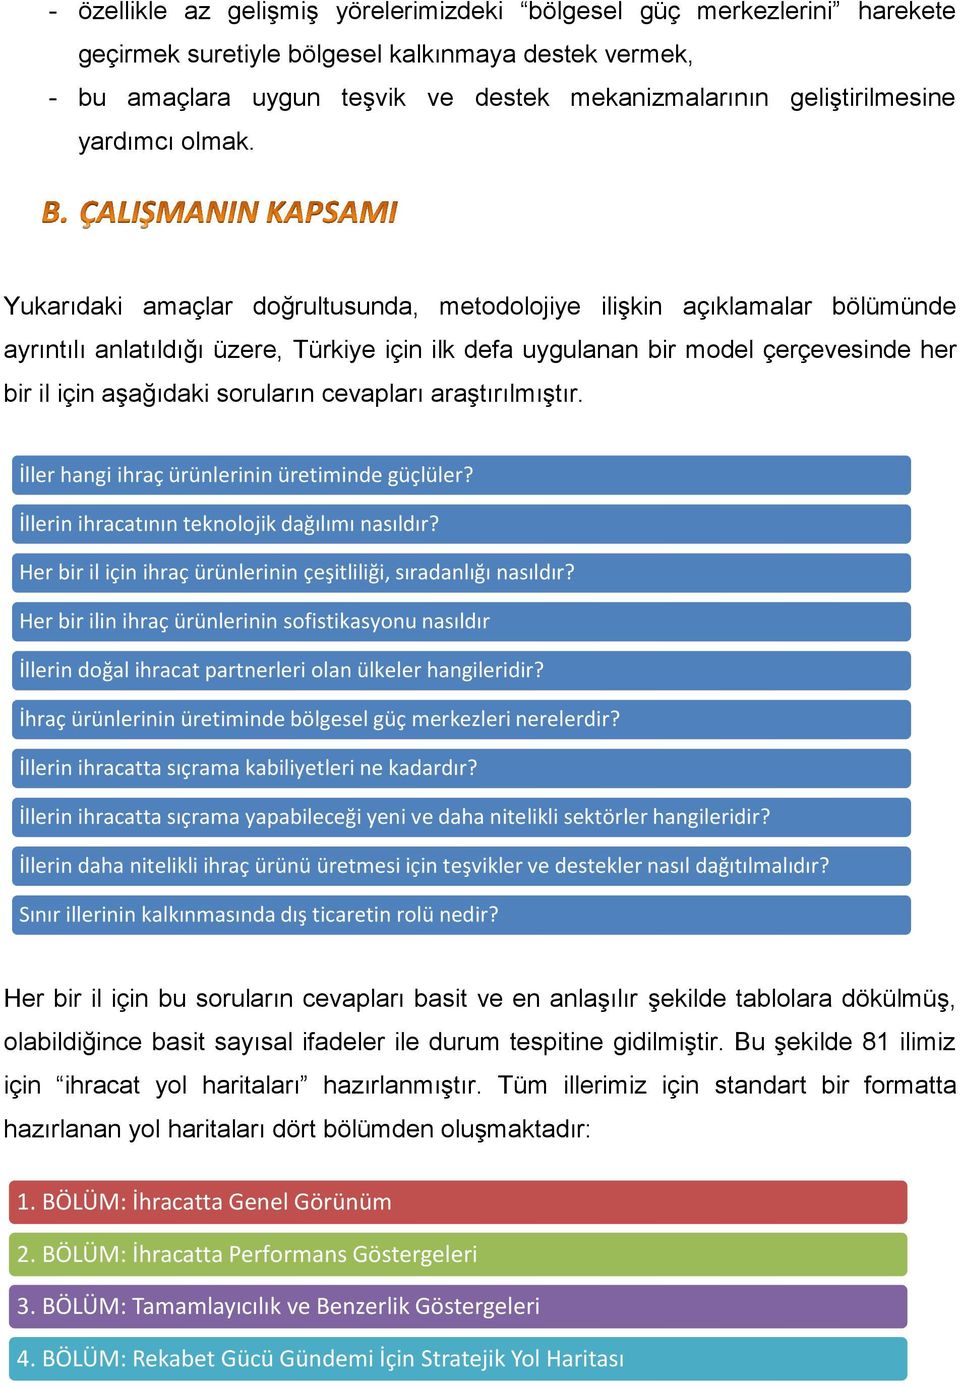 Yukarıdaki amaçlar doğrultusunda, metodolojiye ilişkin açıklamalar bölümünde ayrıntılı anlatıldığı üzere, Türkiye için ilk defa uygulanan bir model çerçevesinde her bir il için aşağıdaki soruların